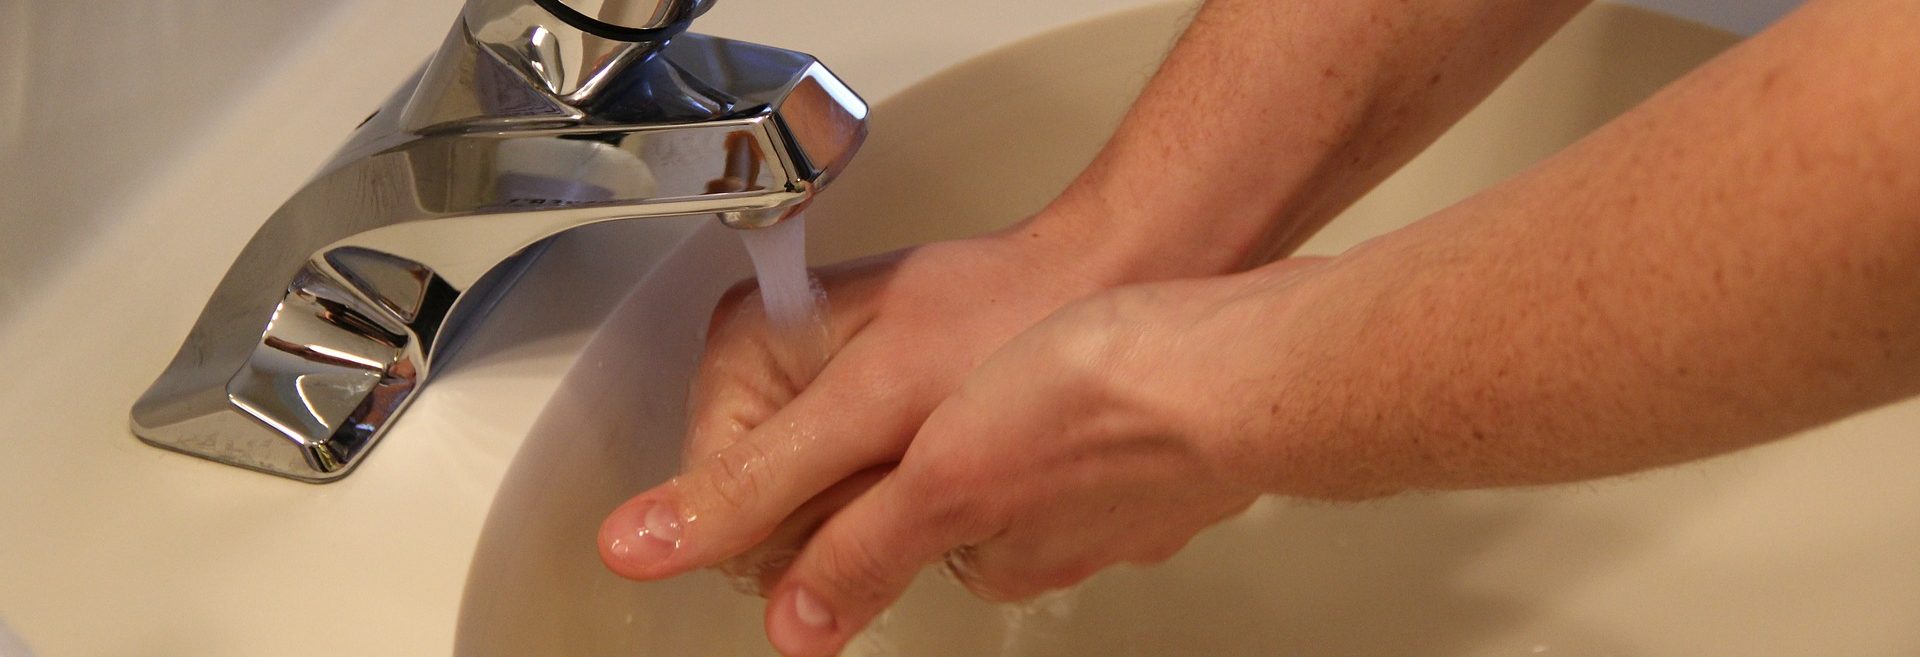 Как правильно мыться: в ванной, душе, бане